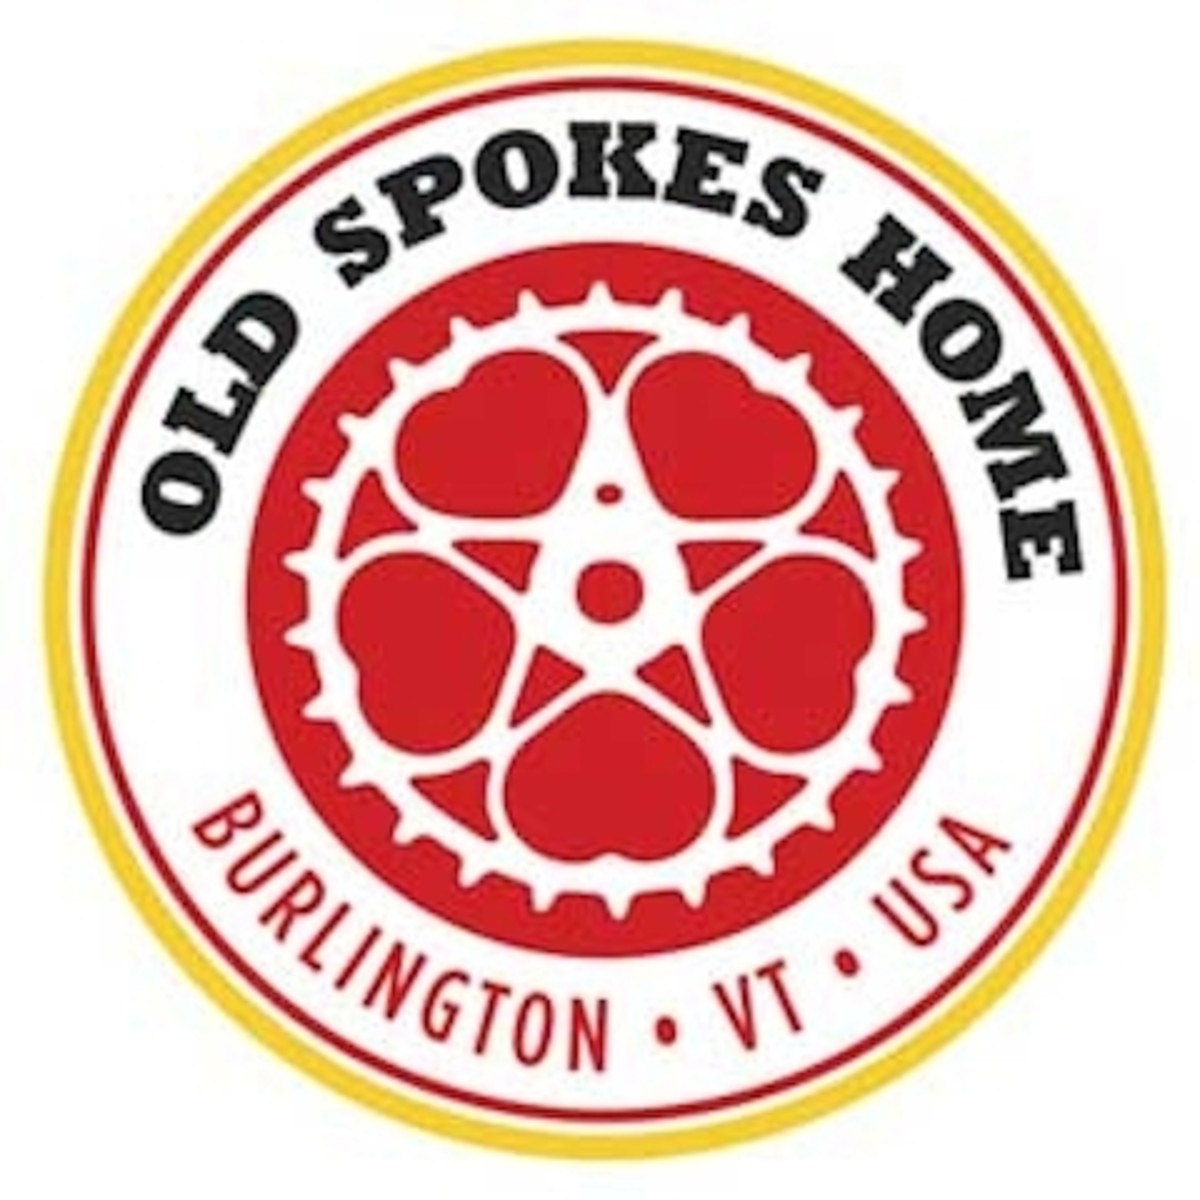 4.old-spokes-home-burlington-vt-best-gear-stores